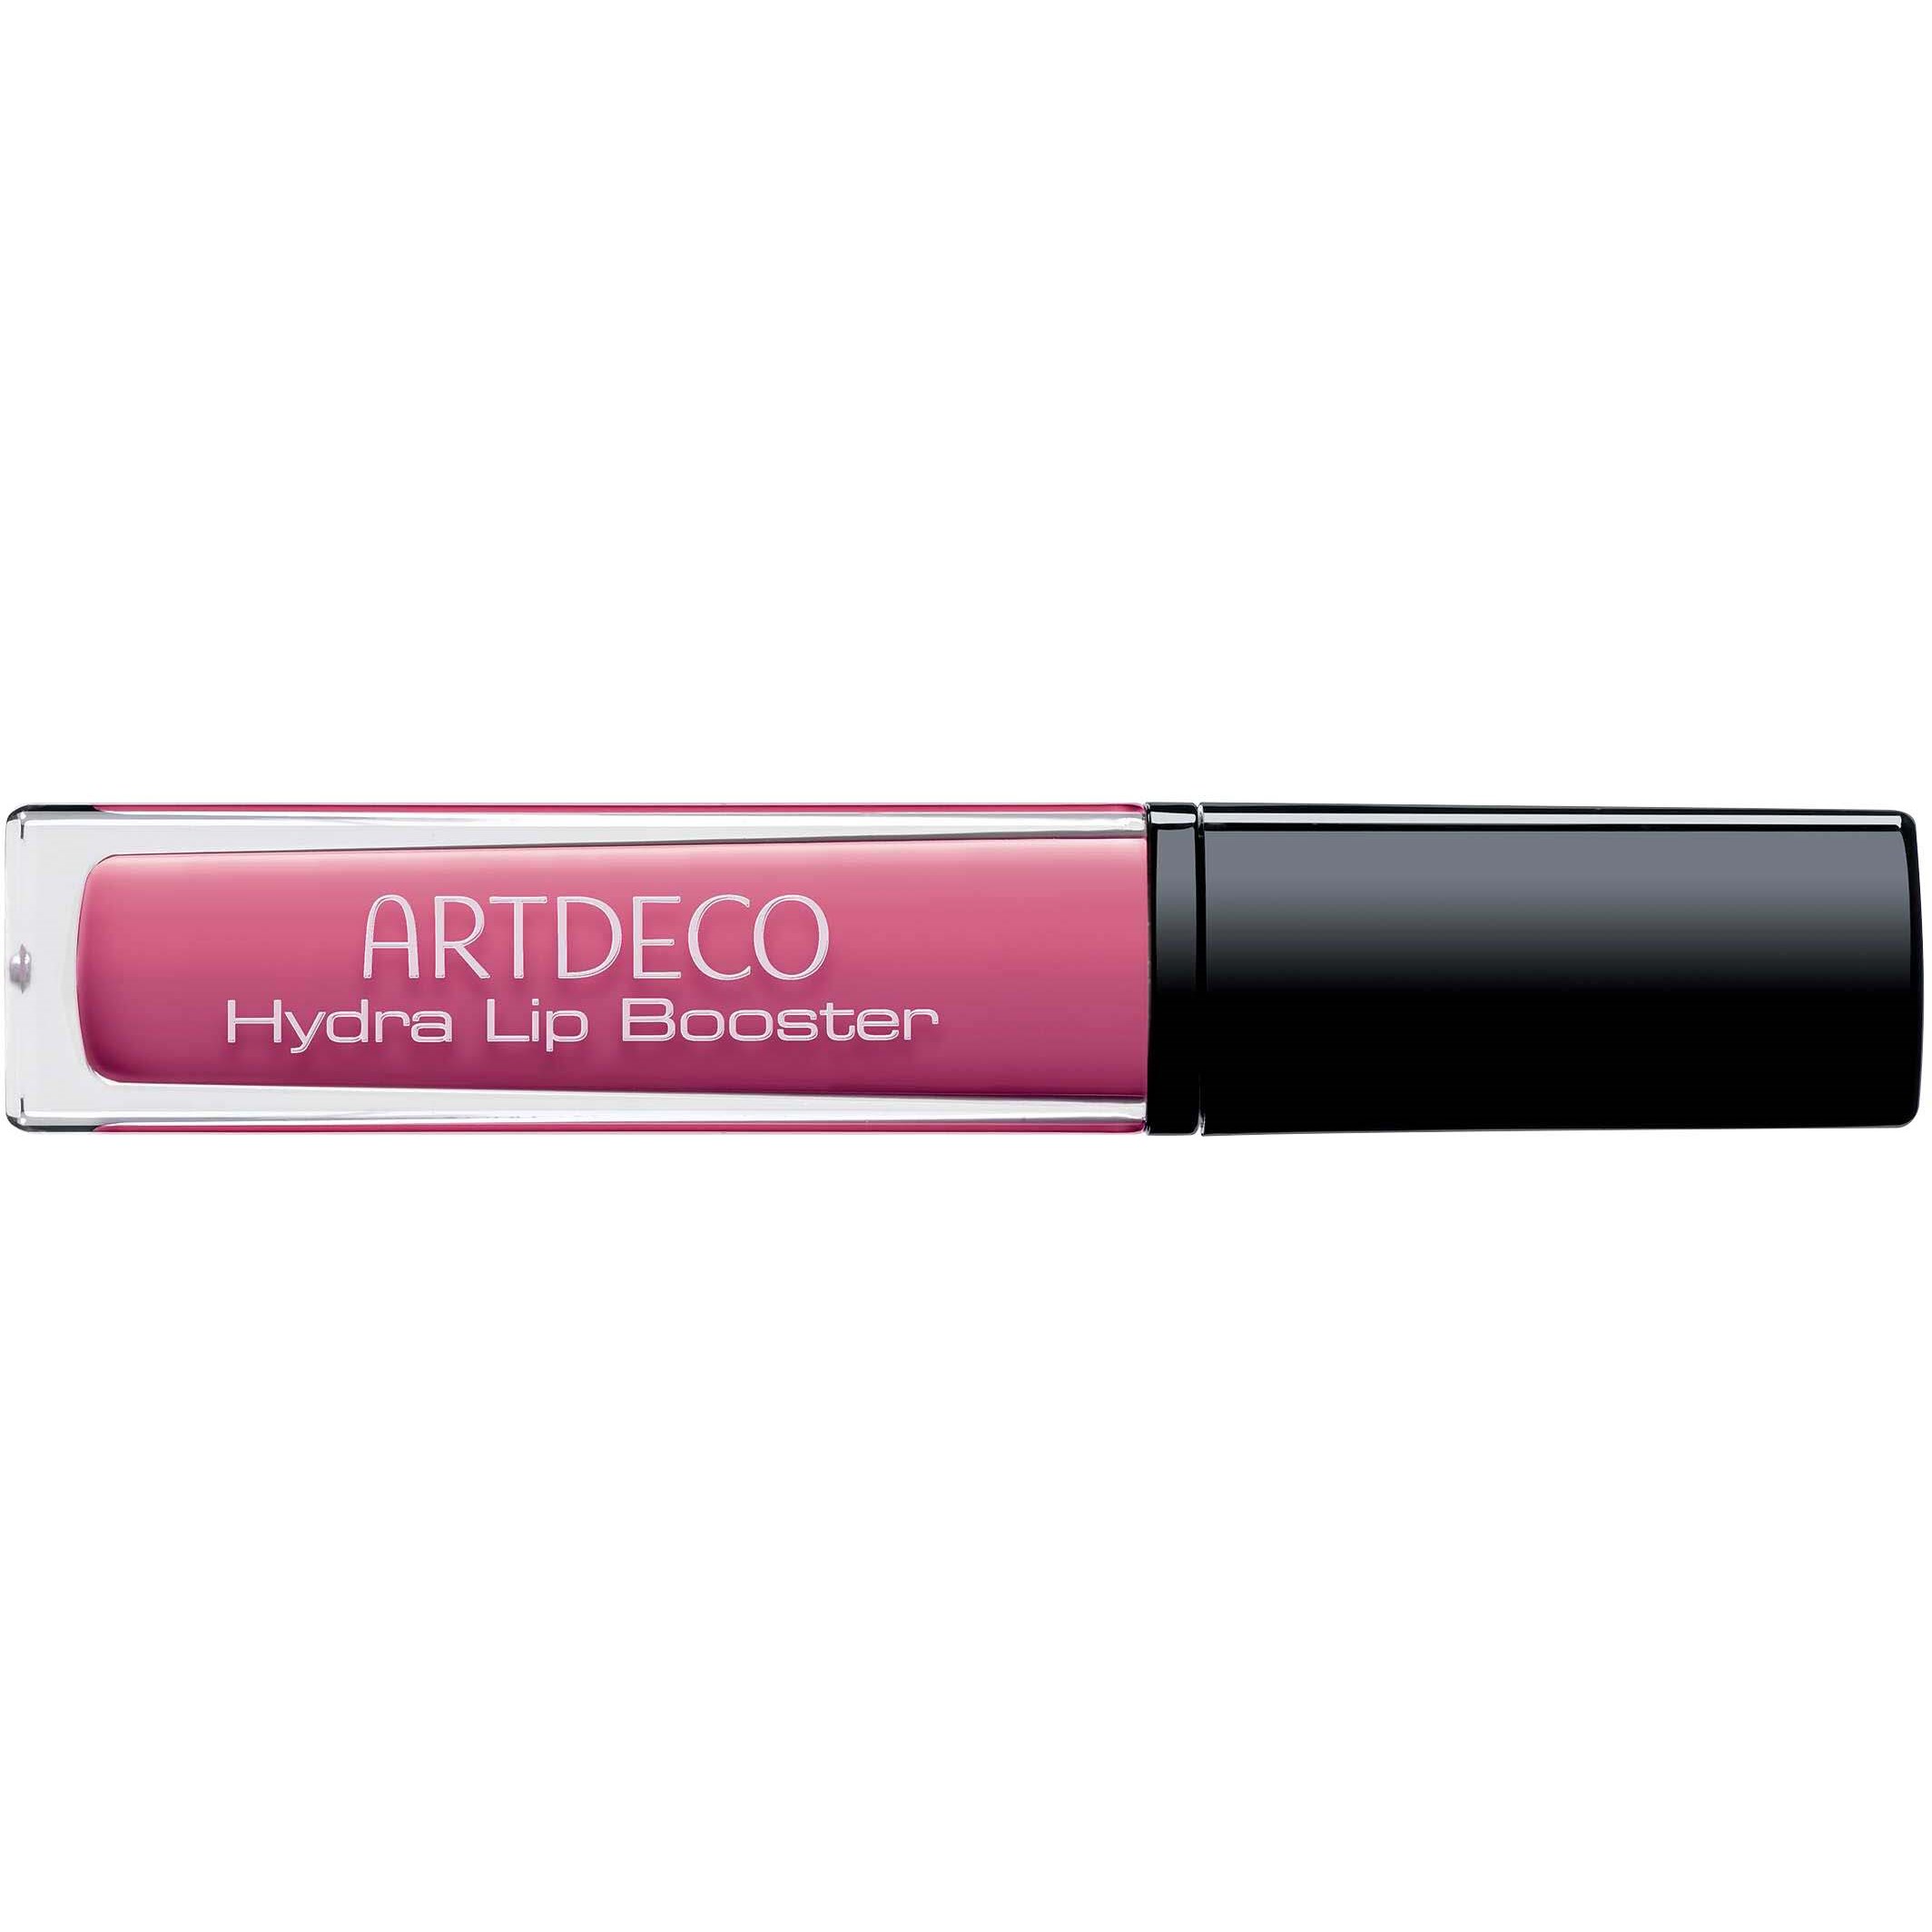 Bilde av Artdeco Hydra Lip Booster 55 Translucent Hot Pink